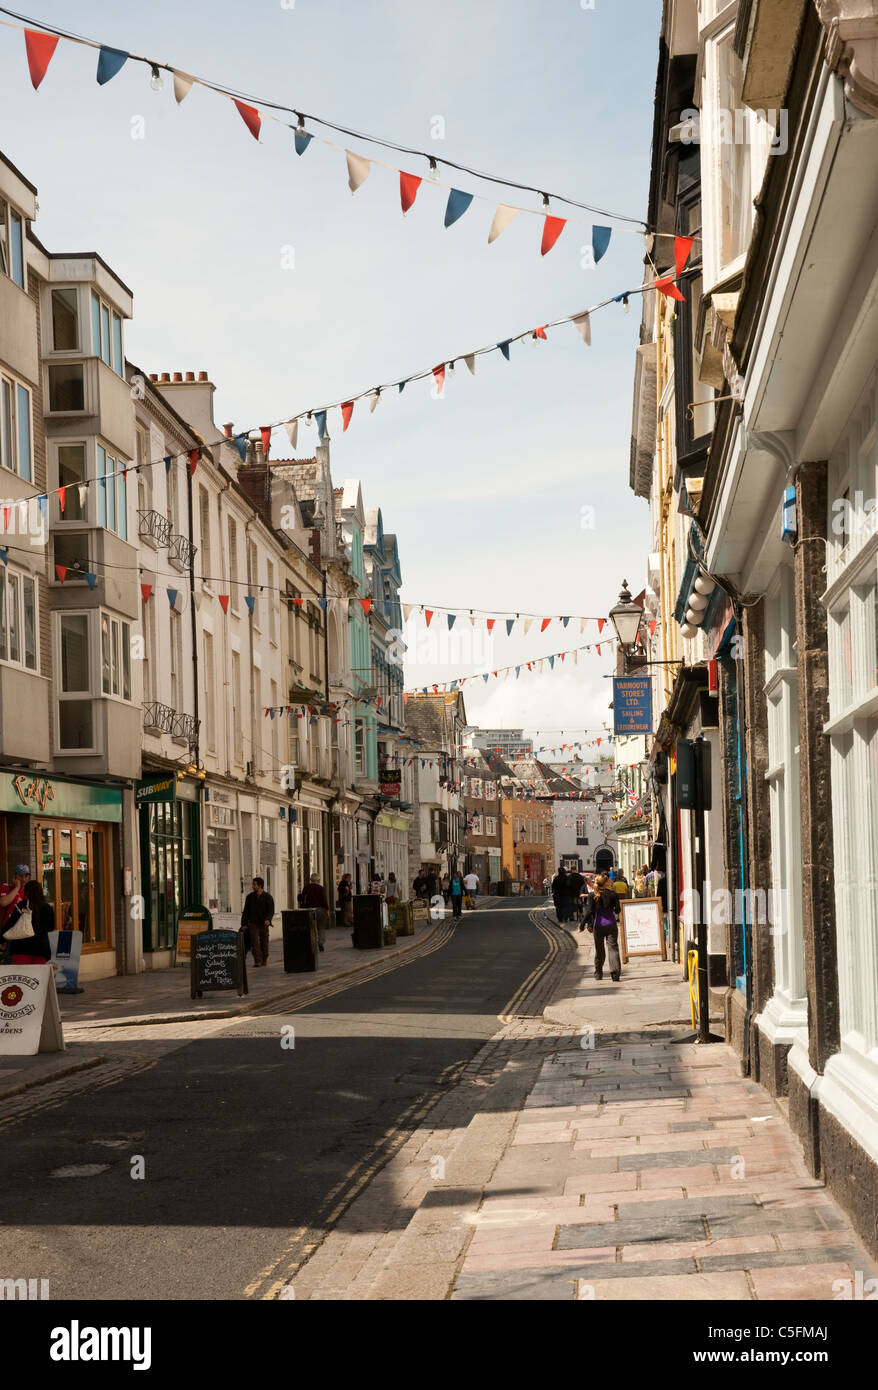 Une scène de rue à la barbacane, Plymouth avec festive bunting. Banque D'Images